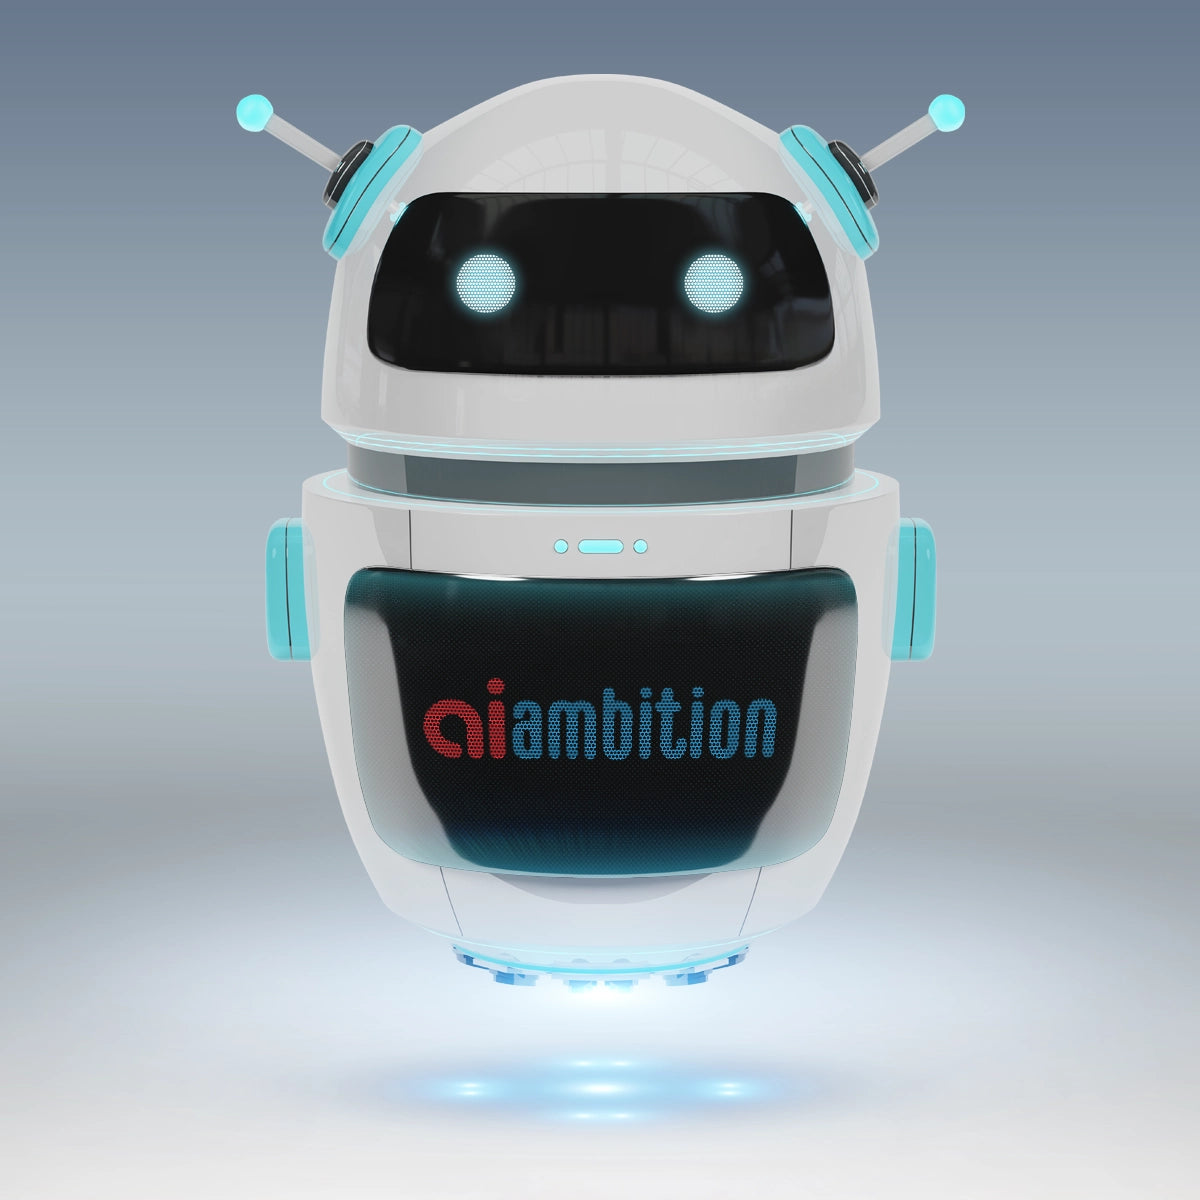 ai-ambition.com